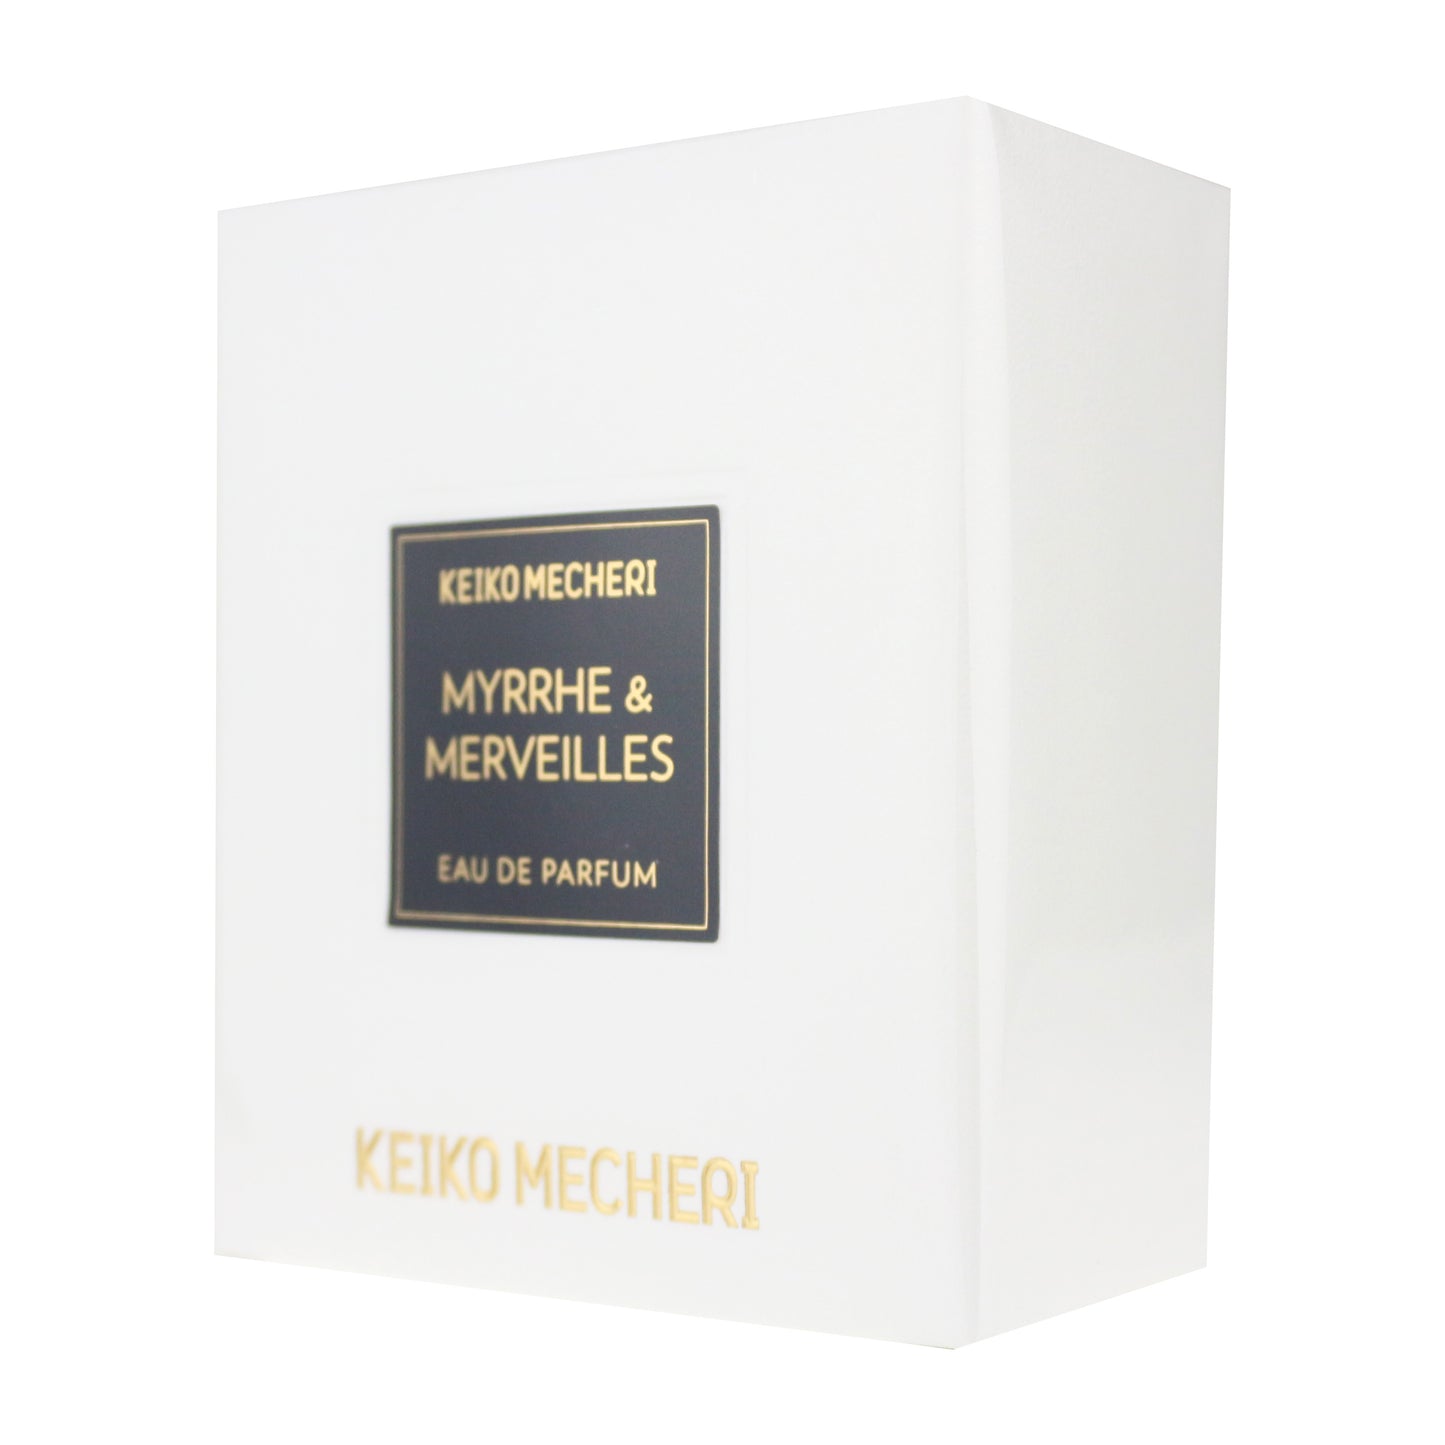 Keiko Mecheri 'Myrrhe & Merveilles' Eau De Parfum 2.5oz/75ml New In Box